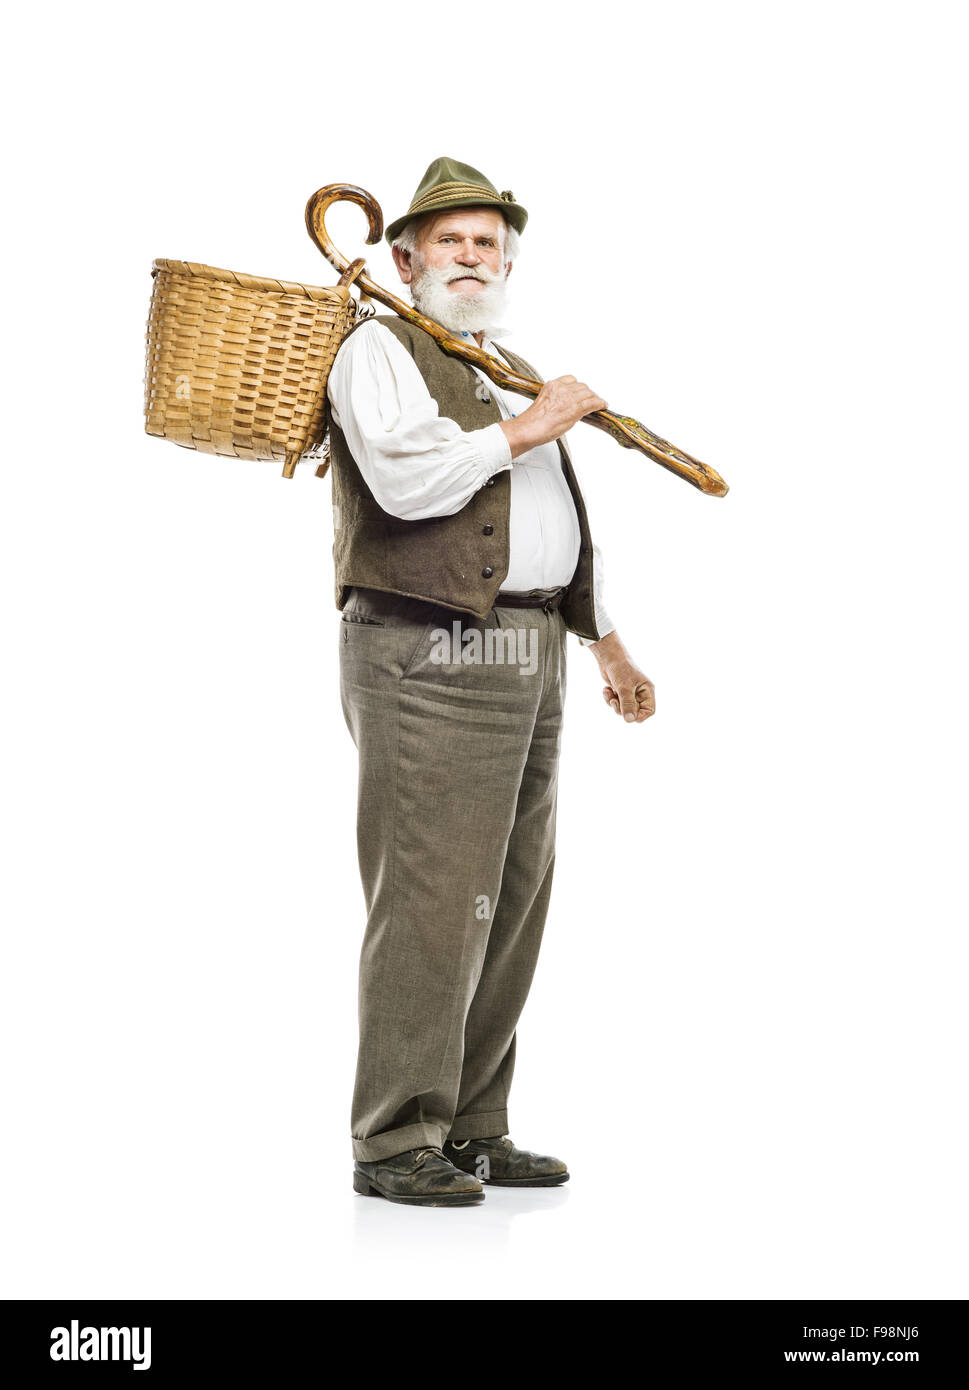 Il vecchio barbuto uomo agricoltore in hat cestello di contenimento, isolato su sfondo bianco Foto Stock